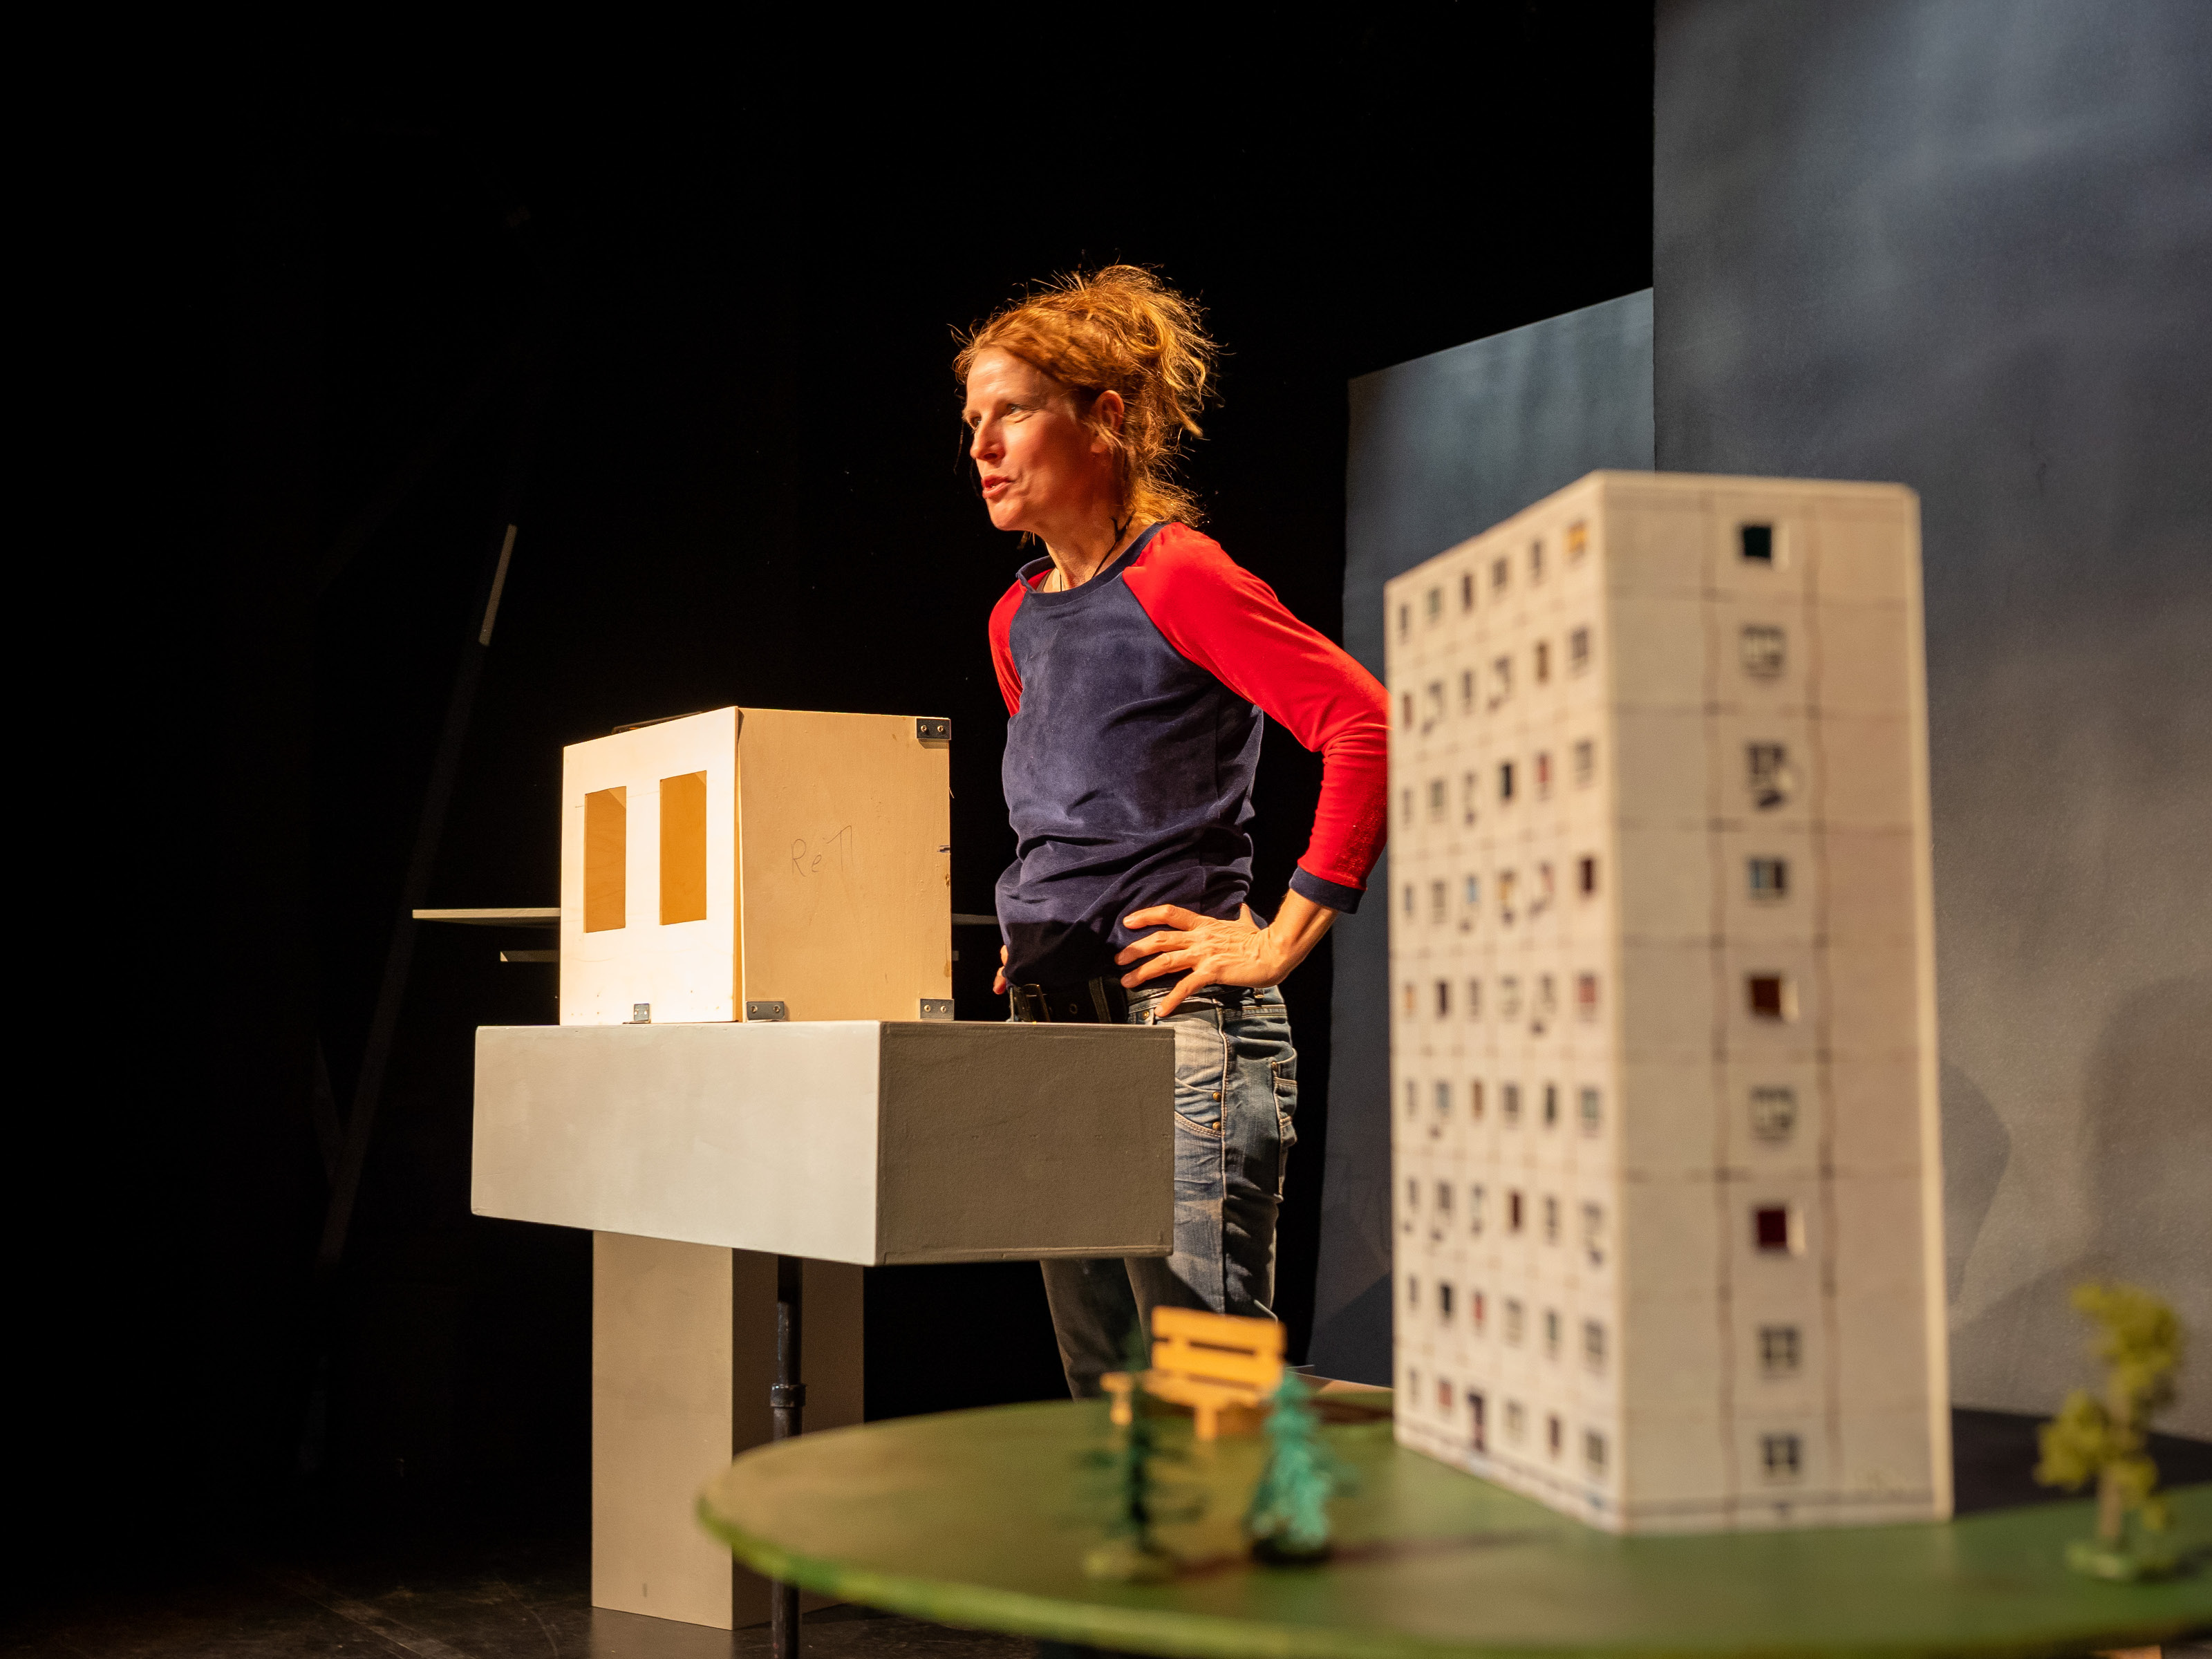 Im Vordergrund des Bildes ist das Modell eines Hochhauses mit neun Stockwerken zu sehen. Im Hintergrund steht Puppenspielerin Annegret Geist mit in die Hüften gestemmten Händen.